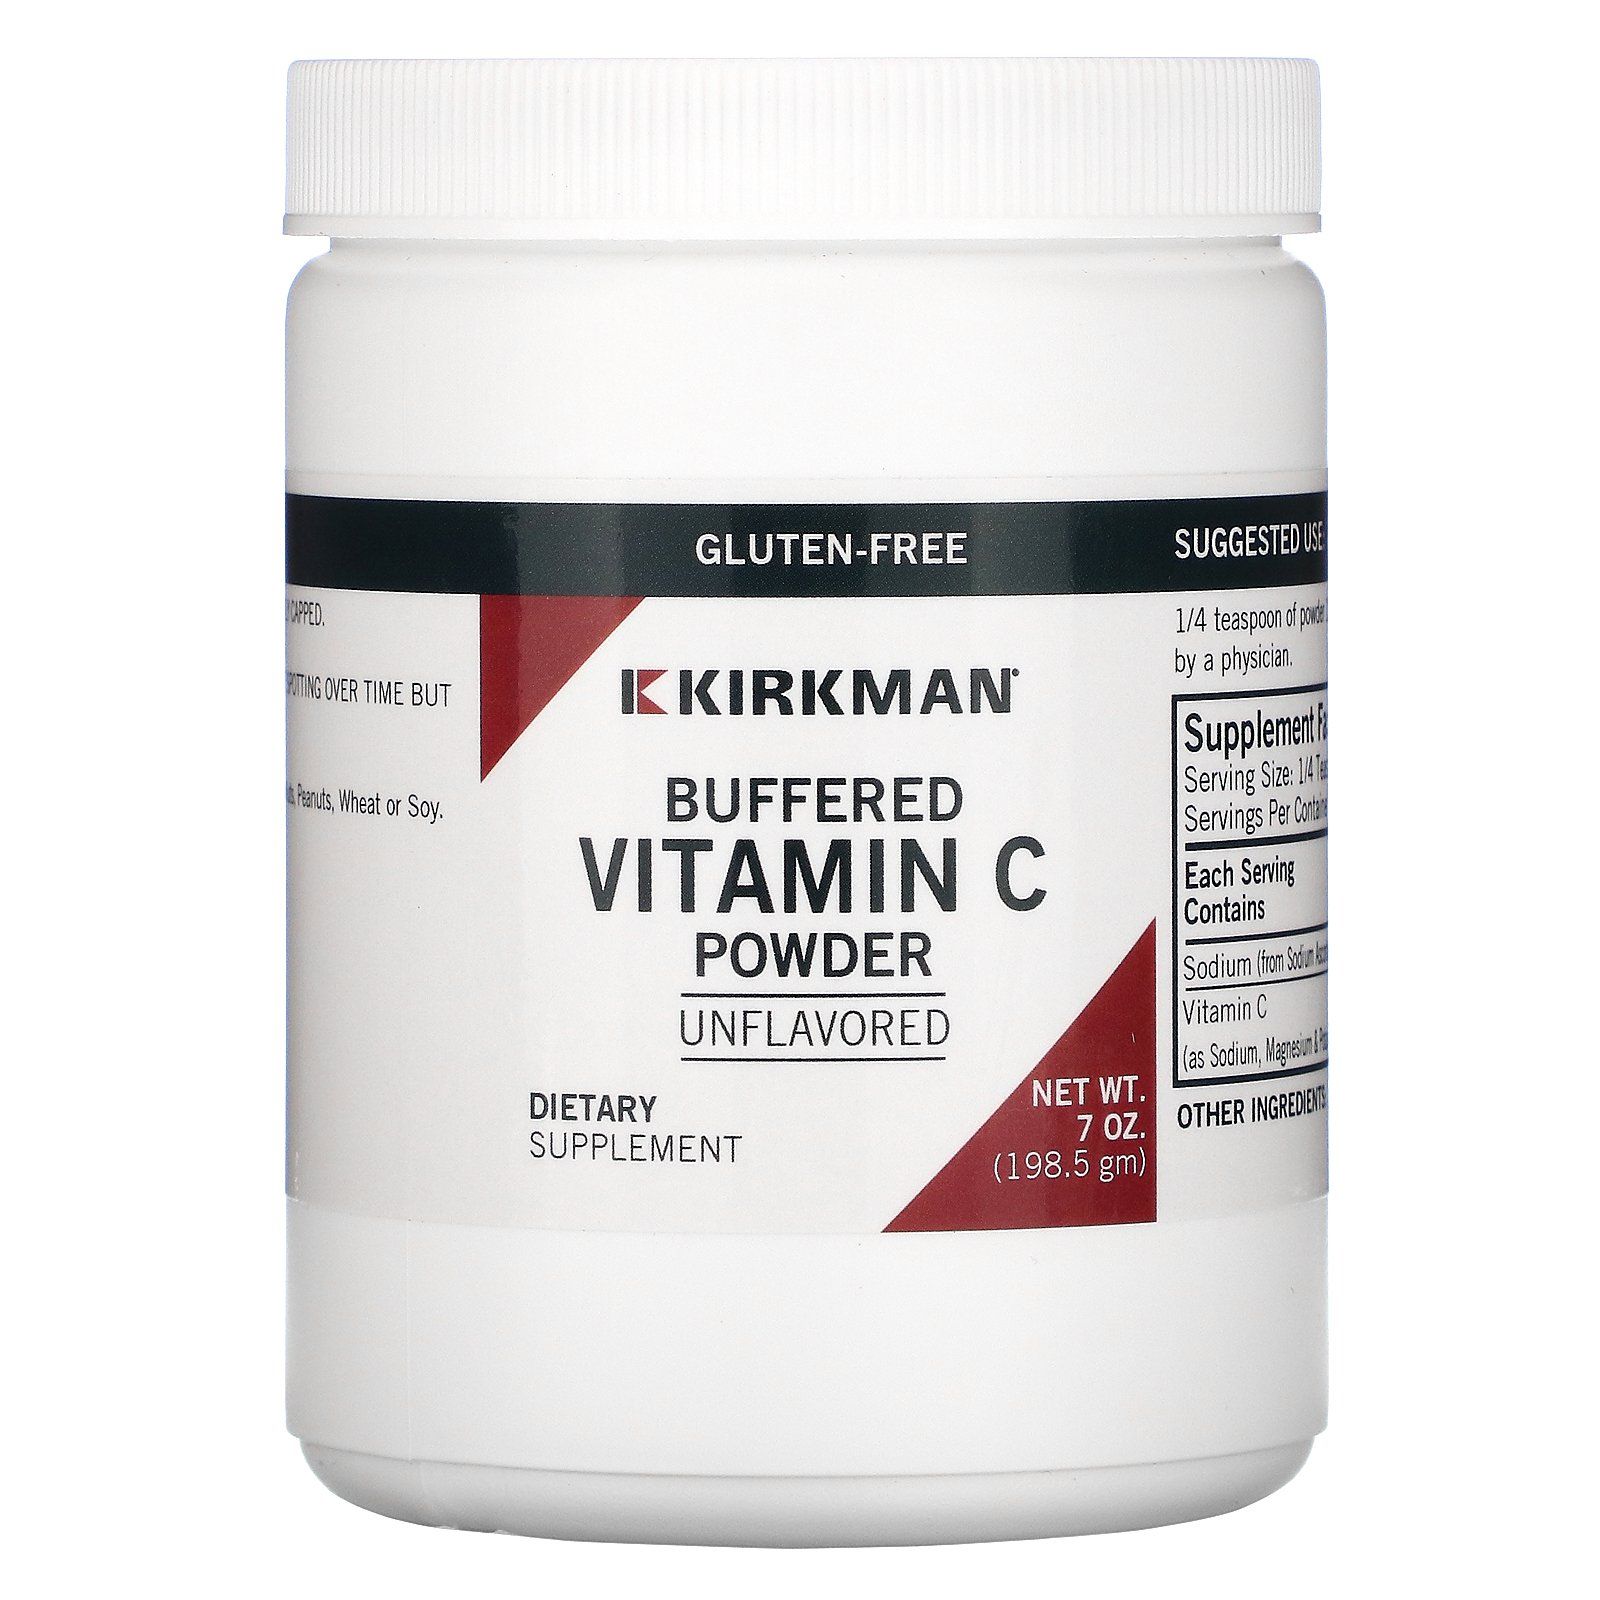 Vitamin powder. Буферизированный витамин с Киркман. Kirkman Labs витамин а. Буферизованный витамин с что это. Витамин с в порошке.